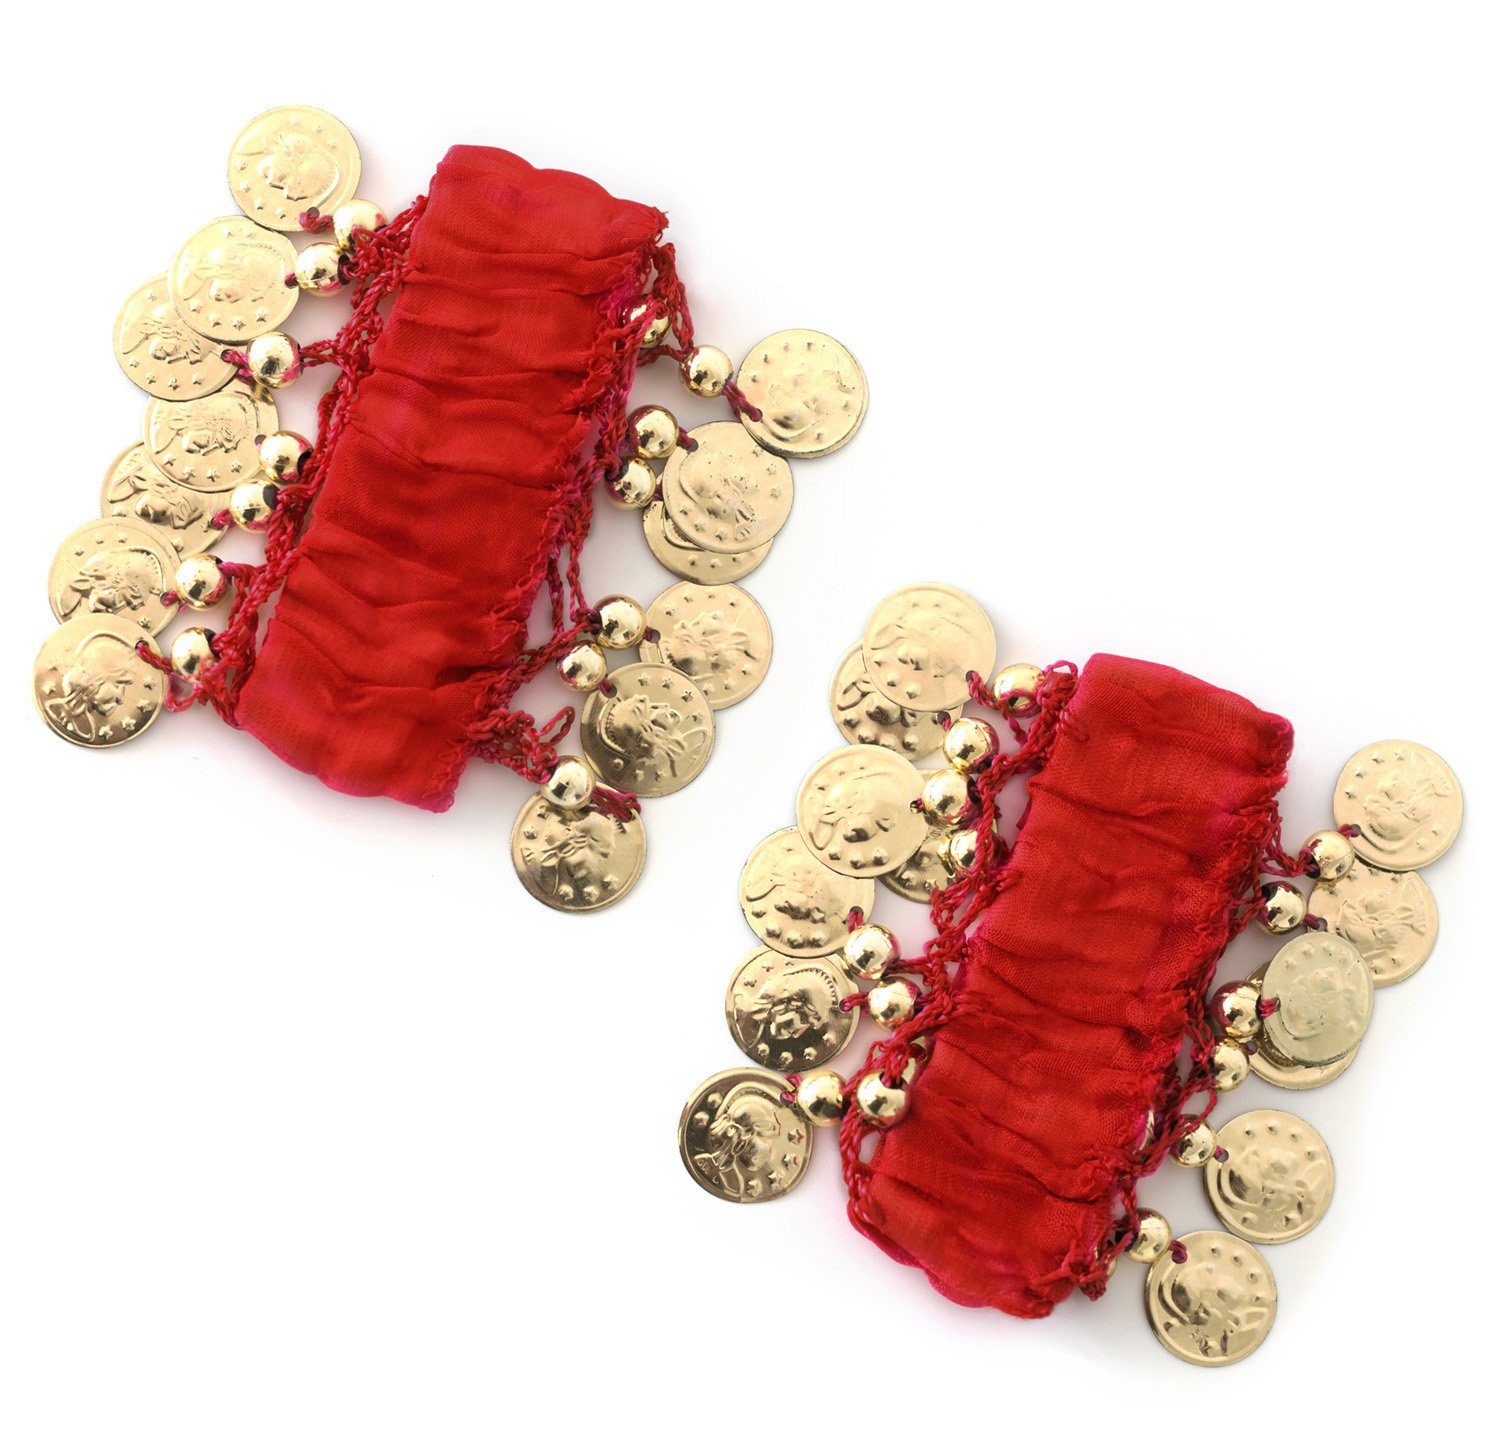 MyBeautyworld24 Armband Belly Dance Handkette (Paar) Fasching Armbänder rot